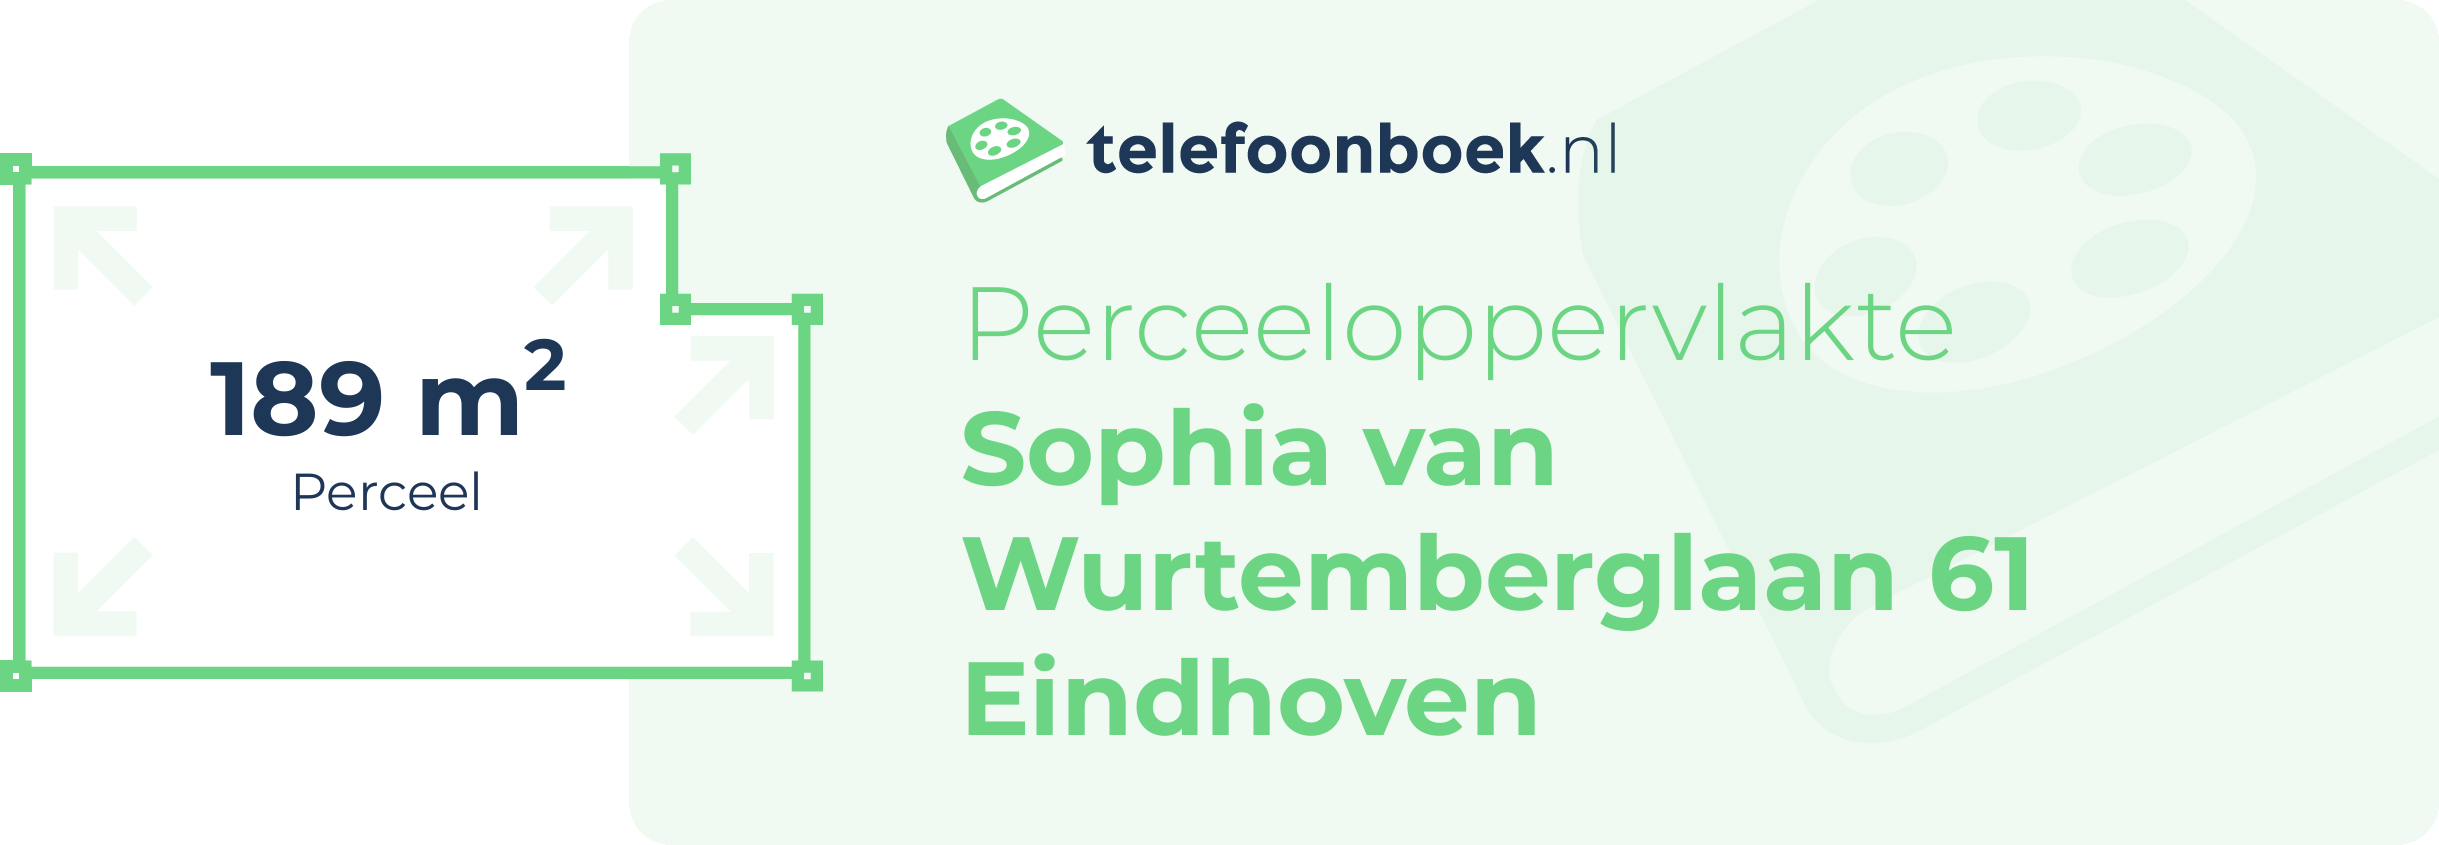 Perceeloppervlakte Sophia Van Wurtemberglaan 61 Eindhoven